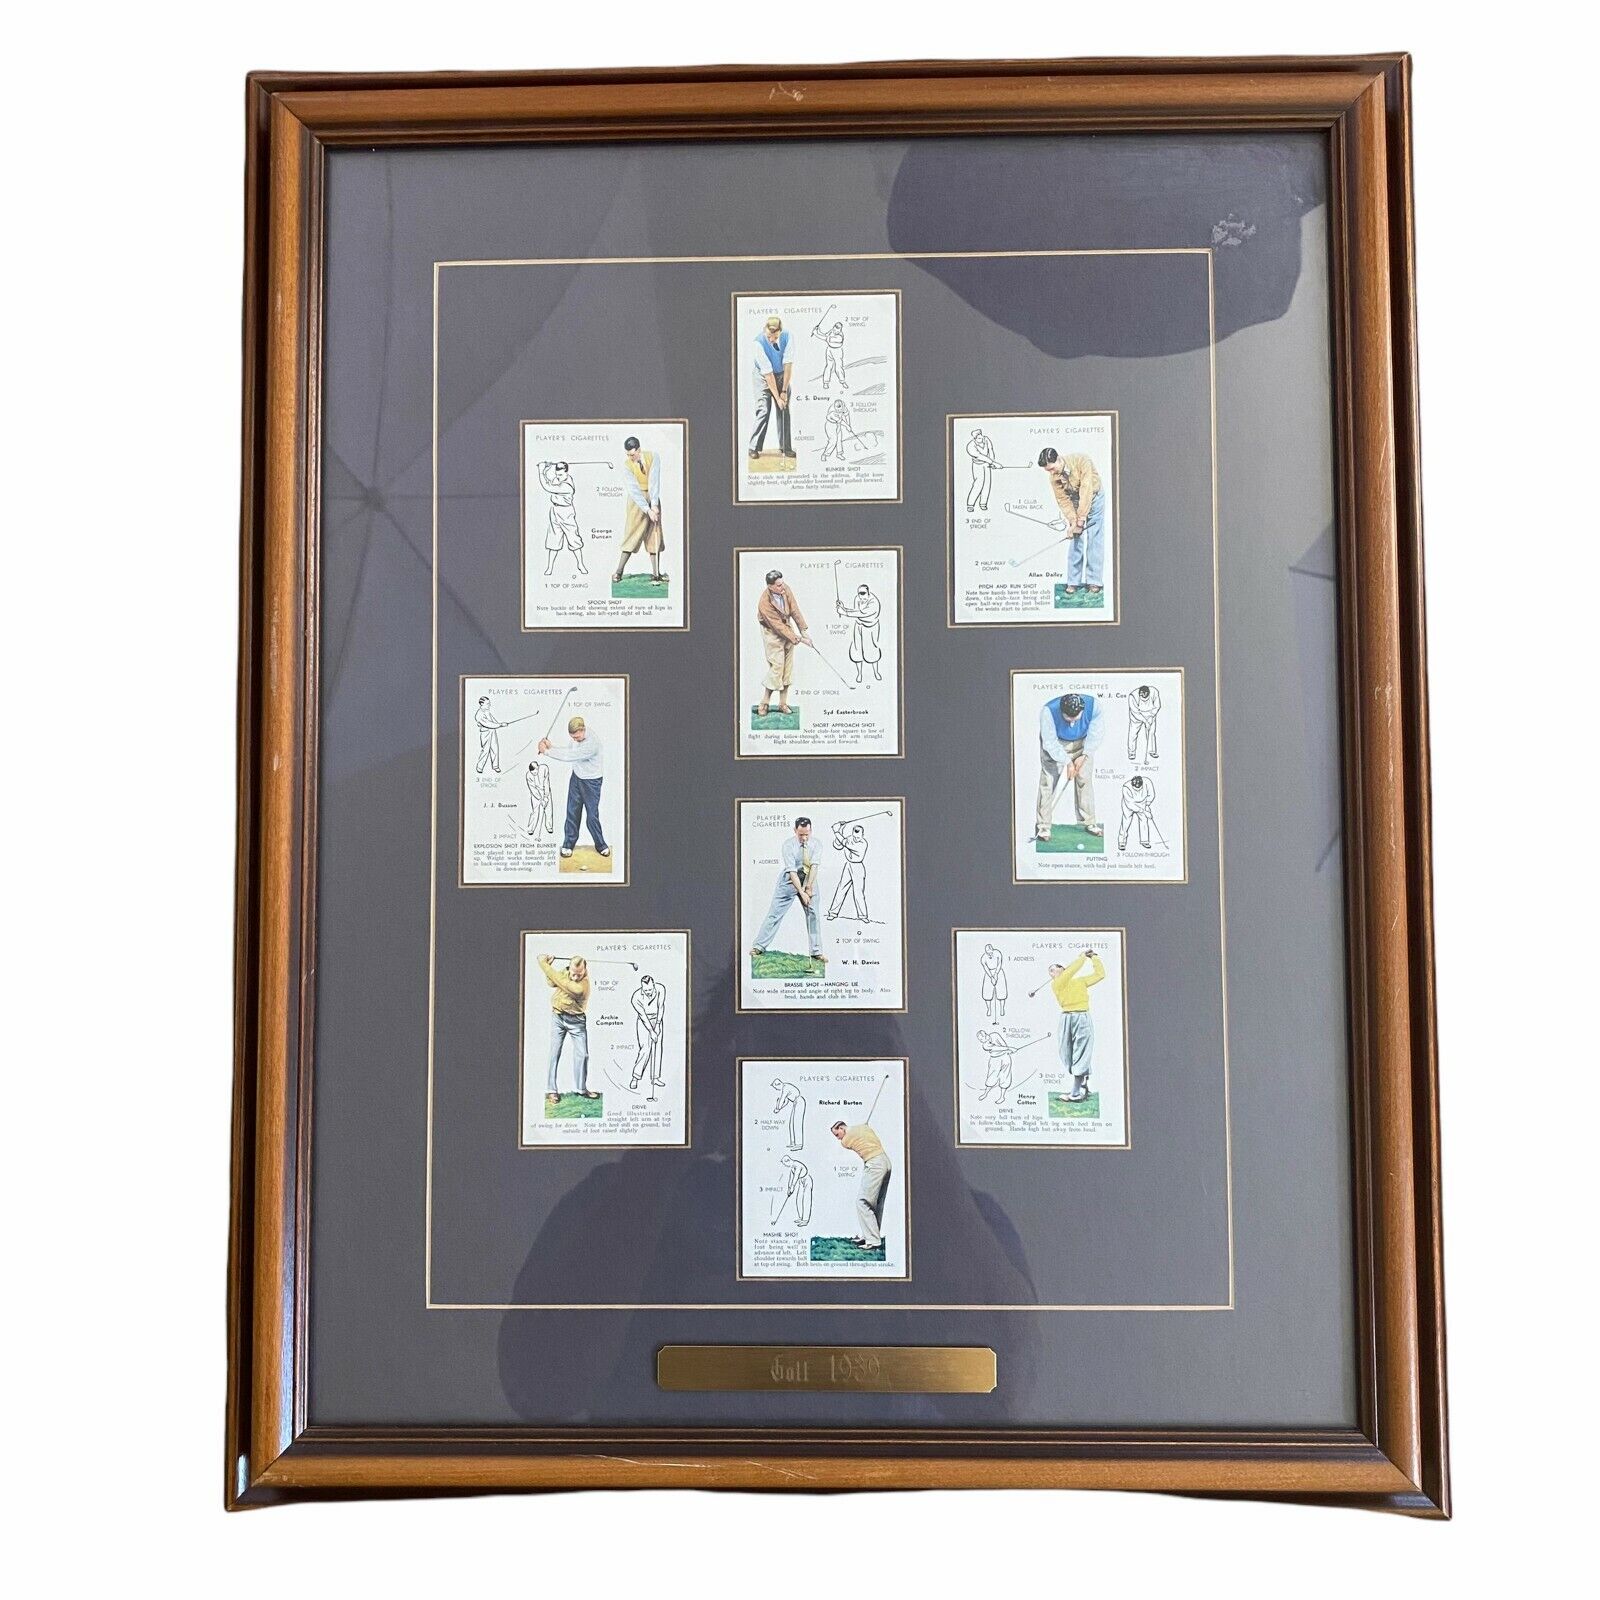 Golf 1939 Vintage Players Cigarettes Card Set of 10 John Player & Sons Framed